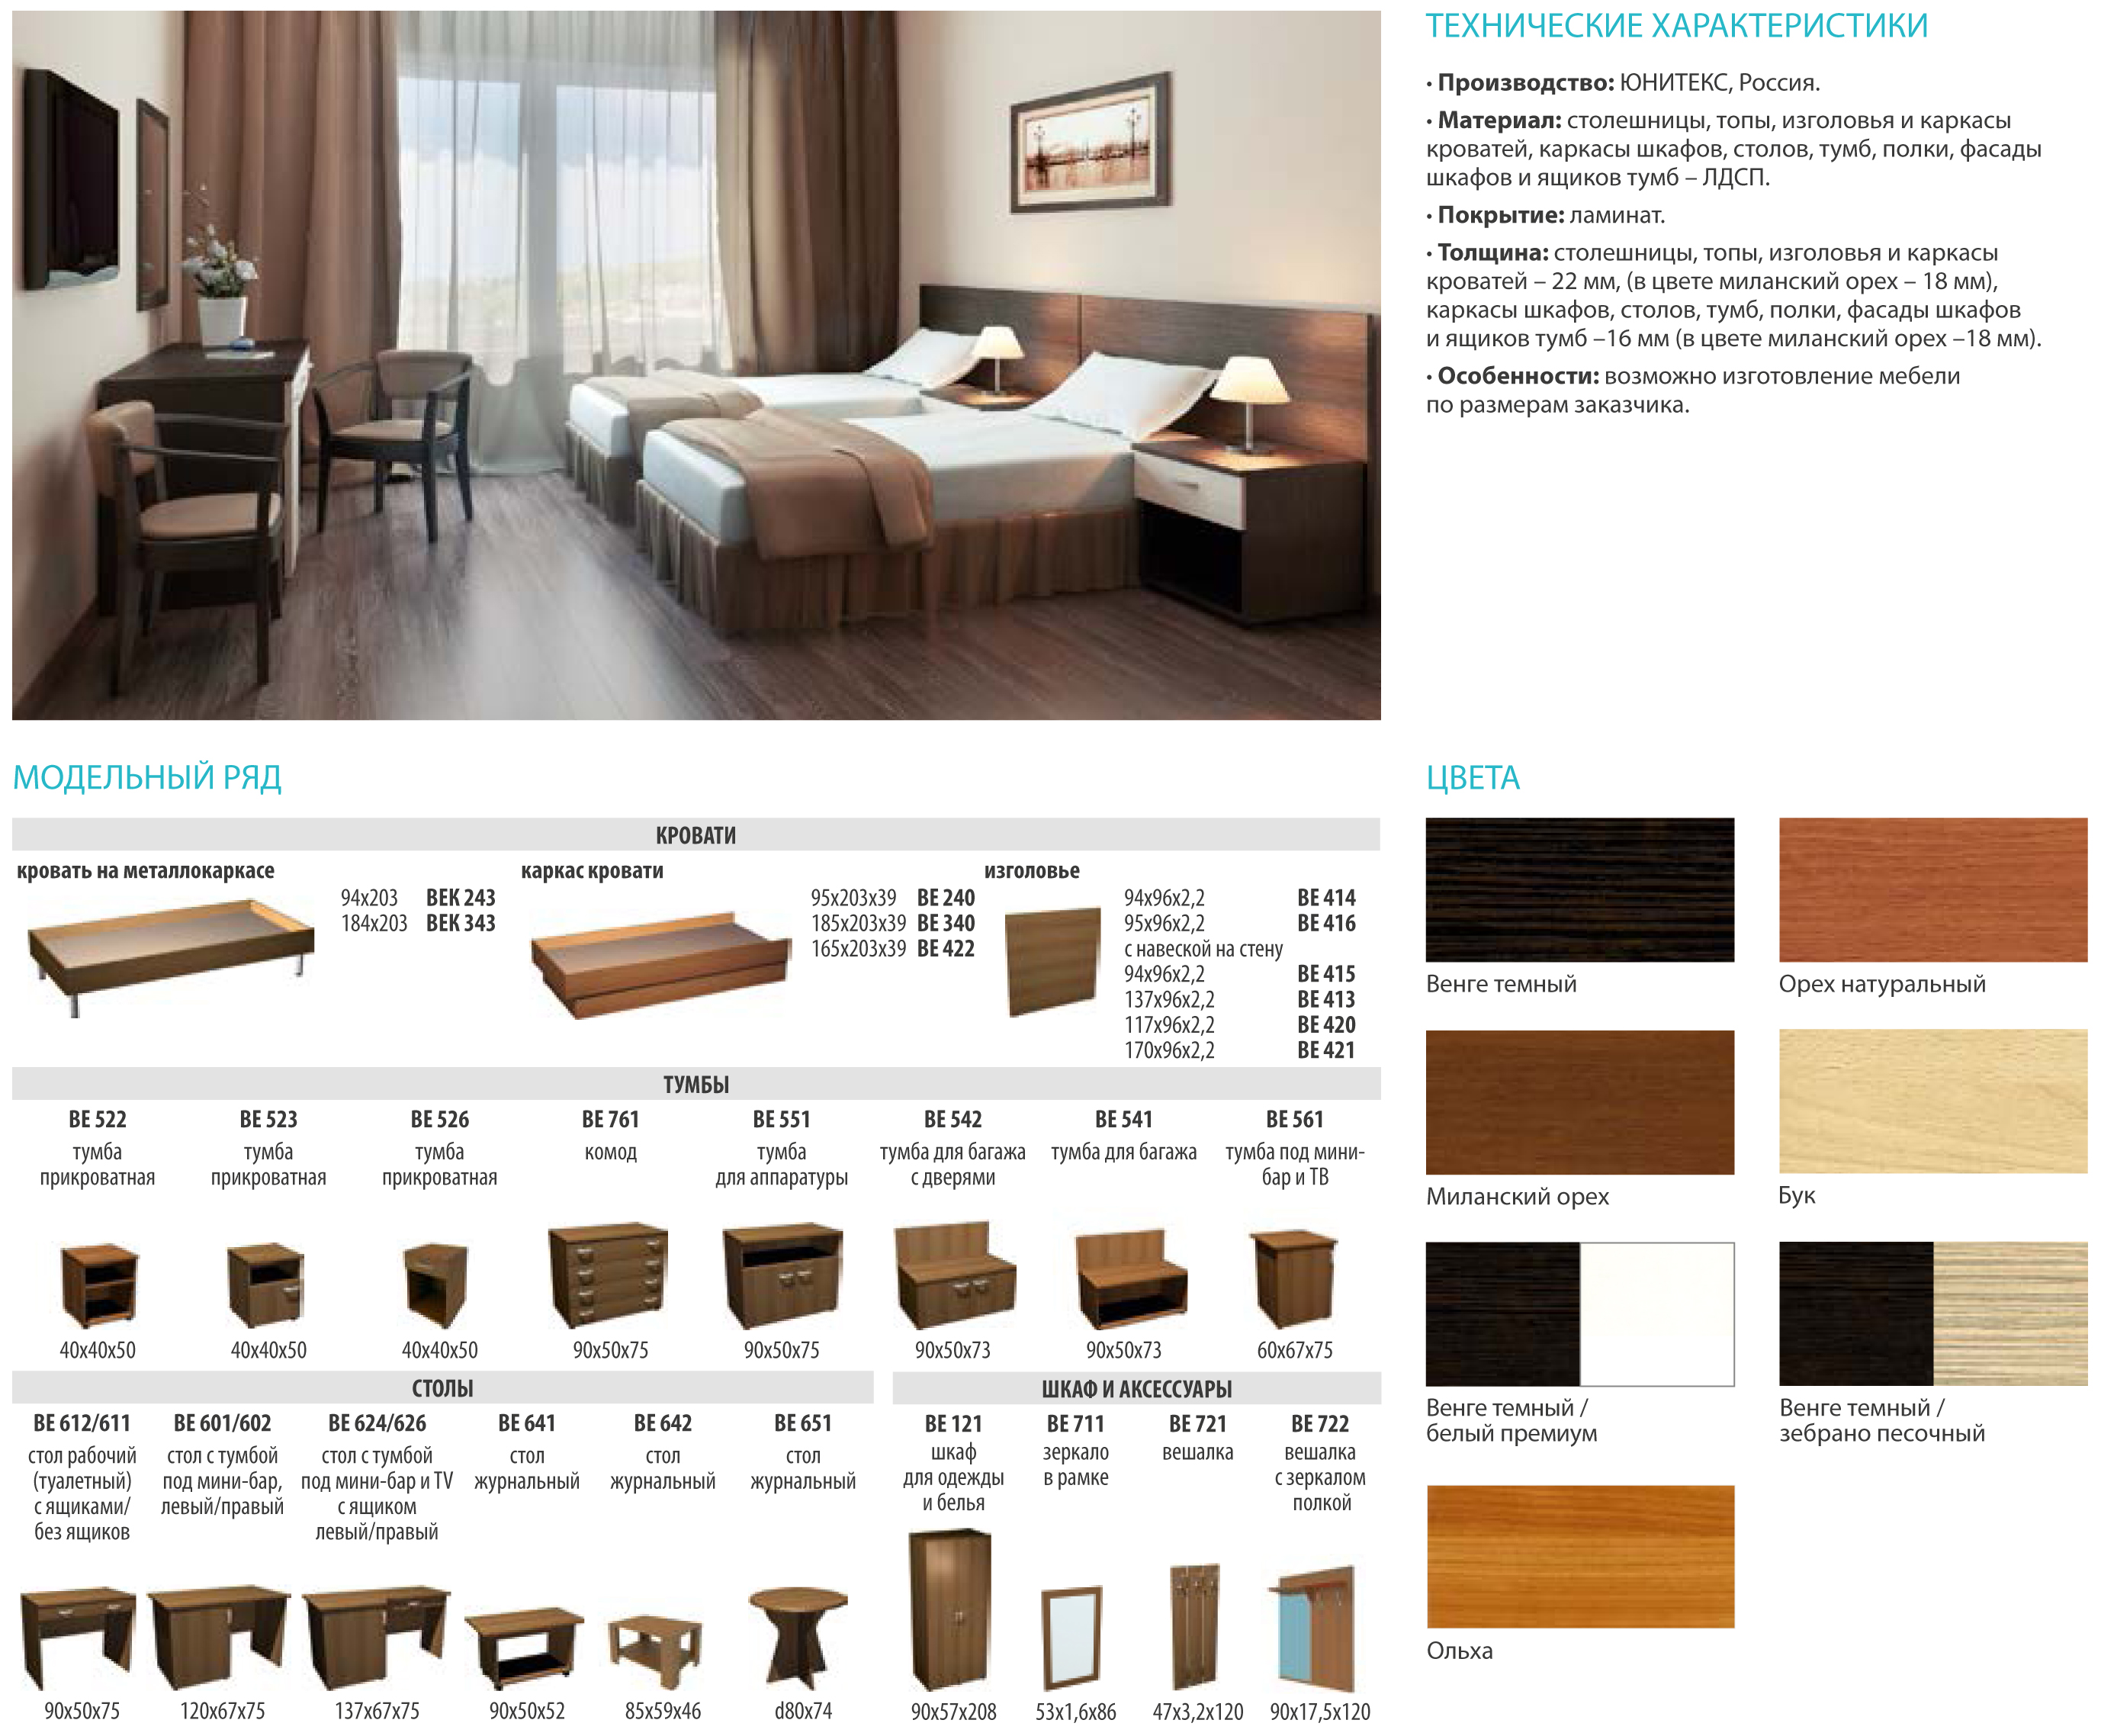 Омские кровати. Предложение от мебельной фабрики для гостиниц. Омская кровать 2000 г.